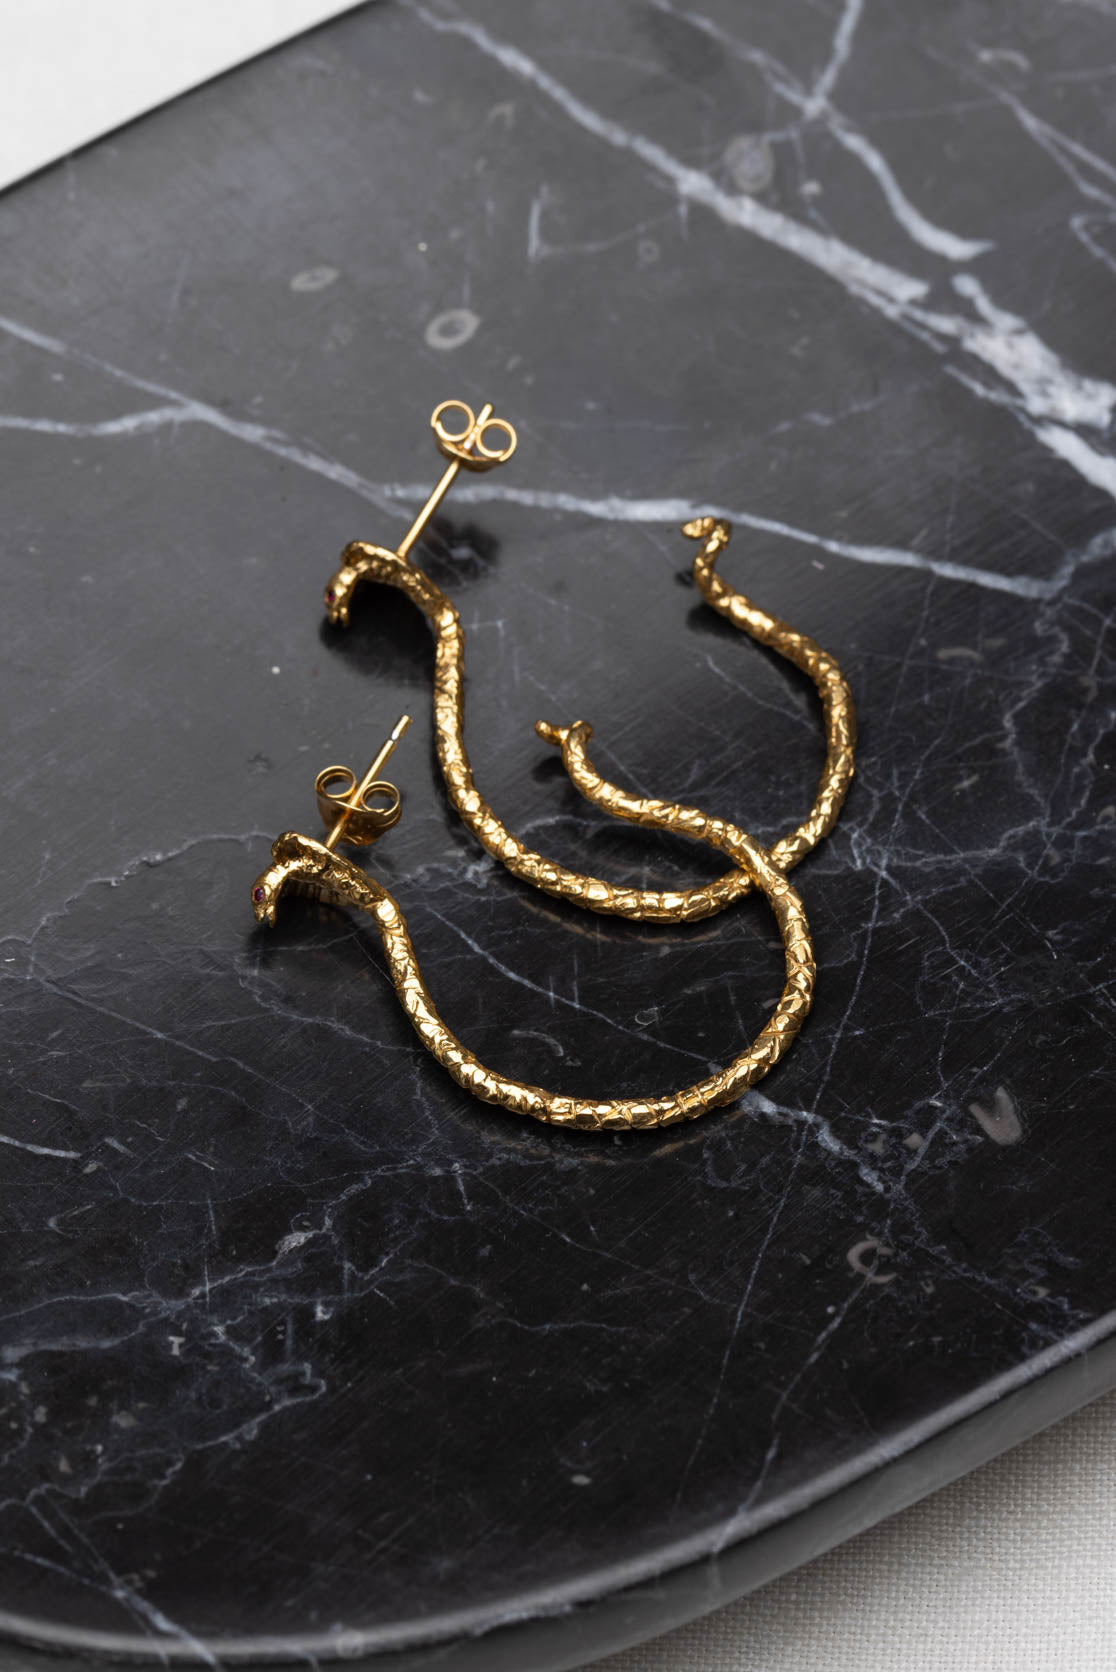 Handmade Snake Hoop Earrings in 22ct Gold Vermeil